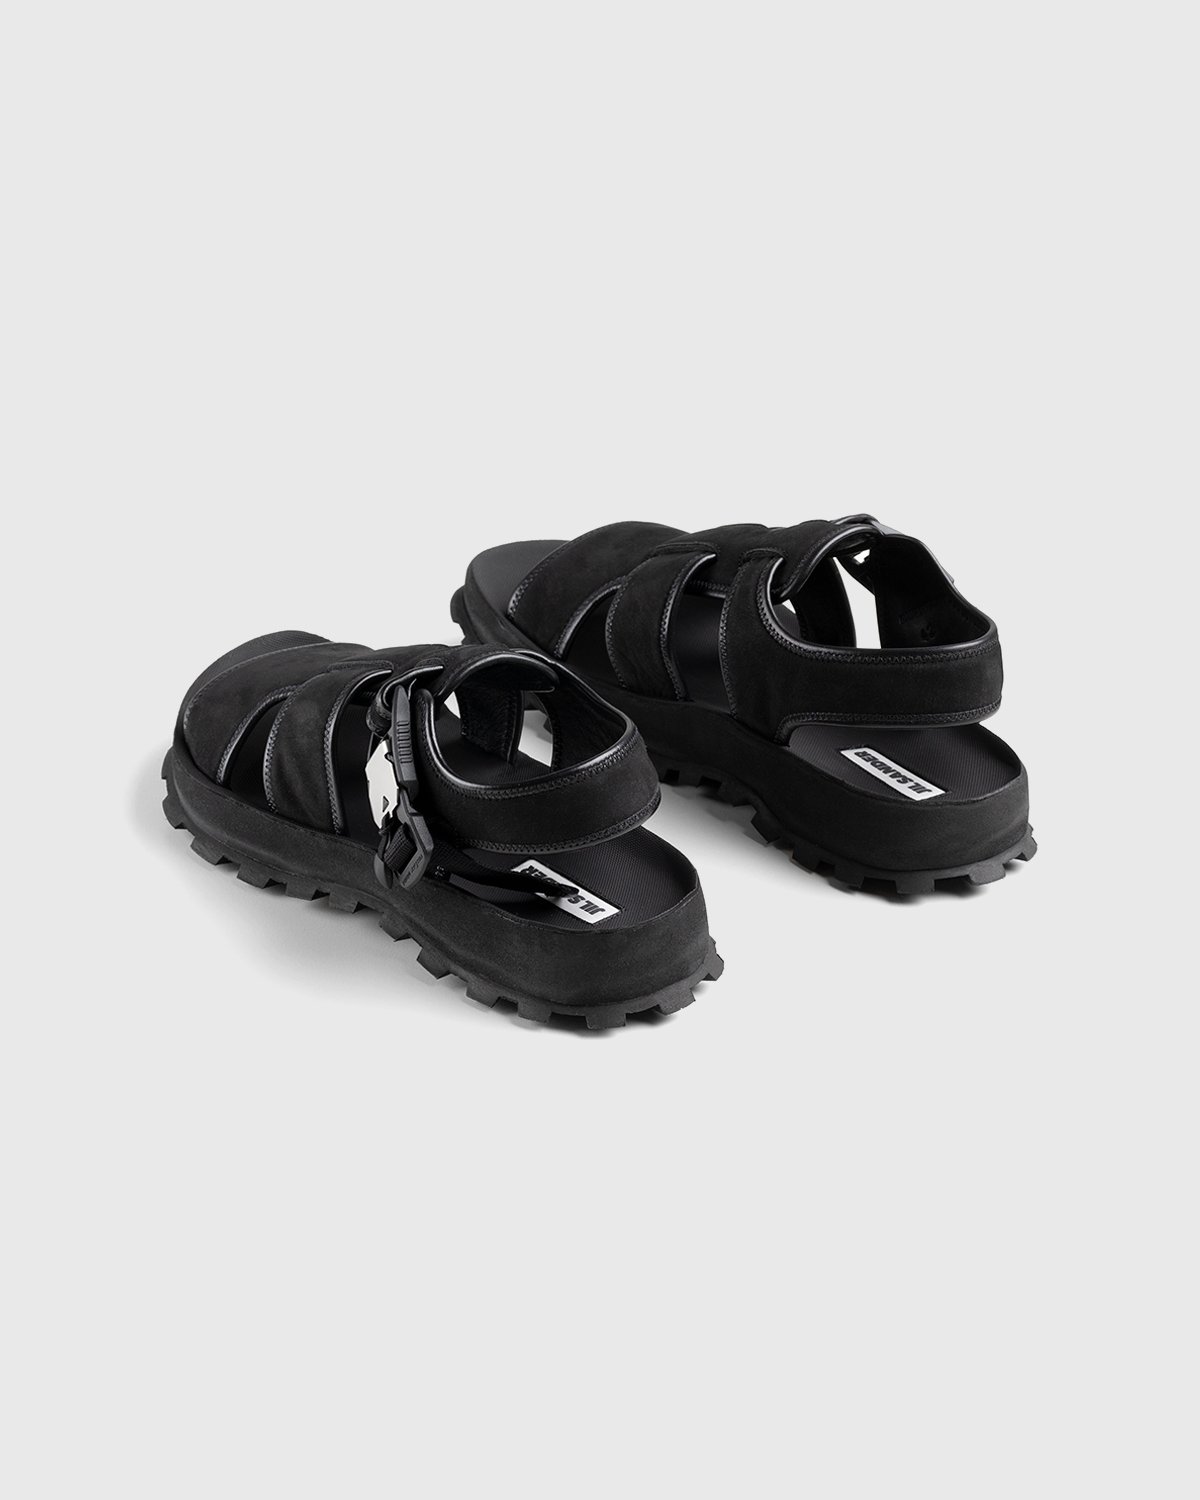 Jil Sander - Calfskin Leather Sandal Black - Footwear - Black - Image 3